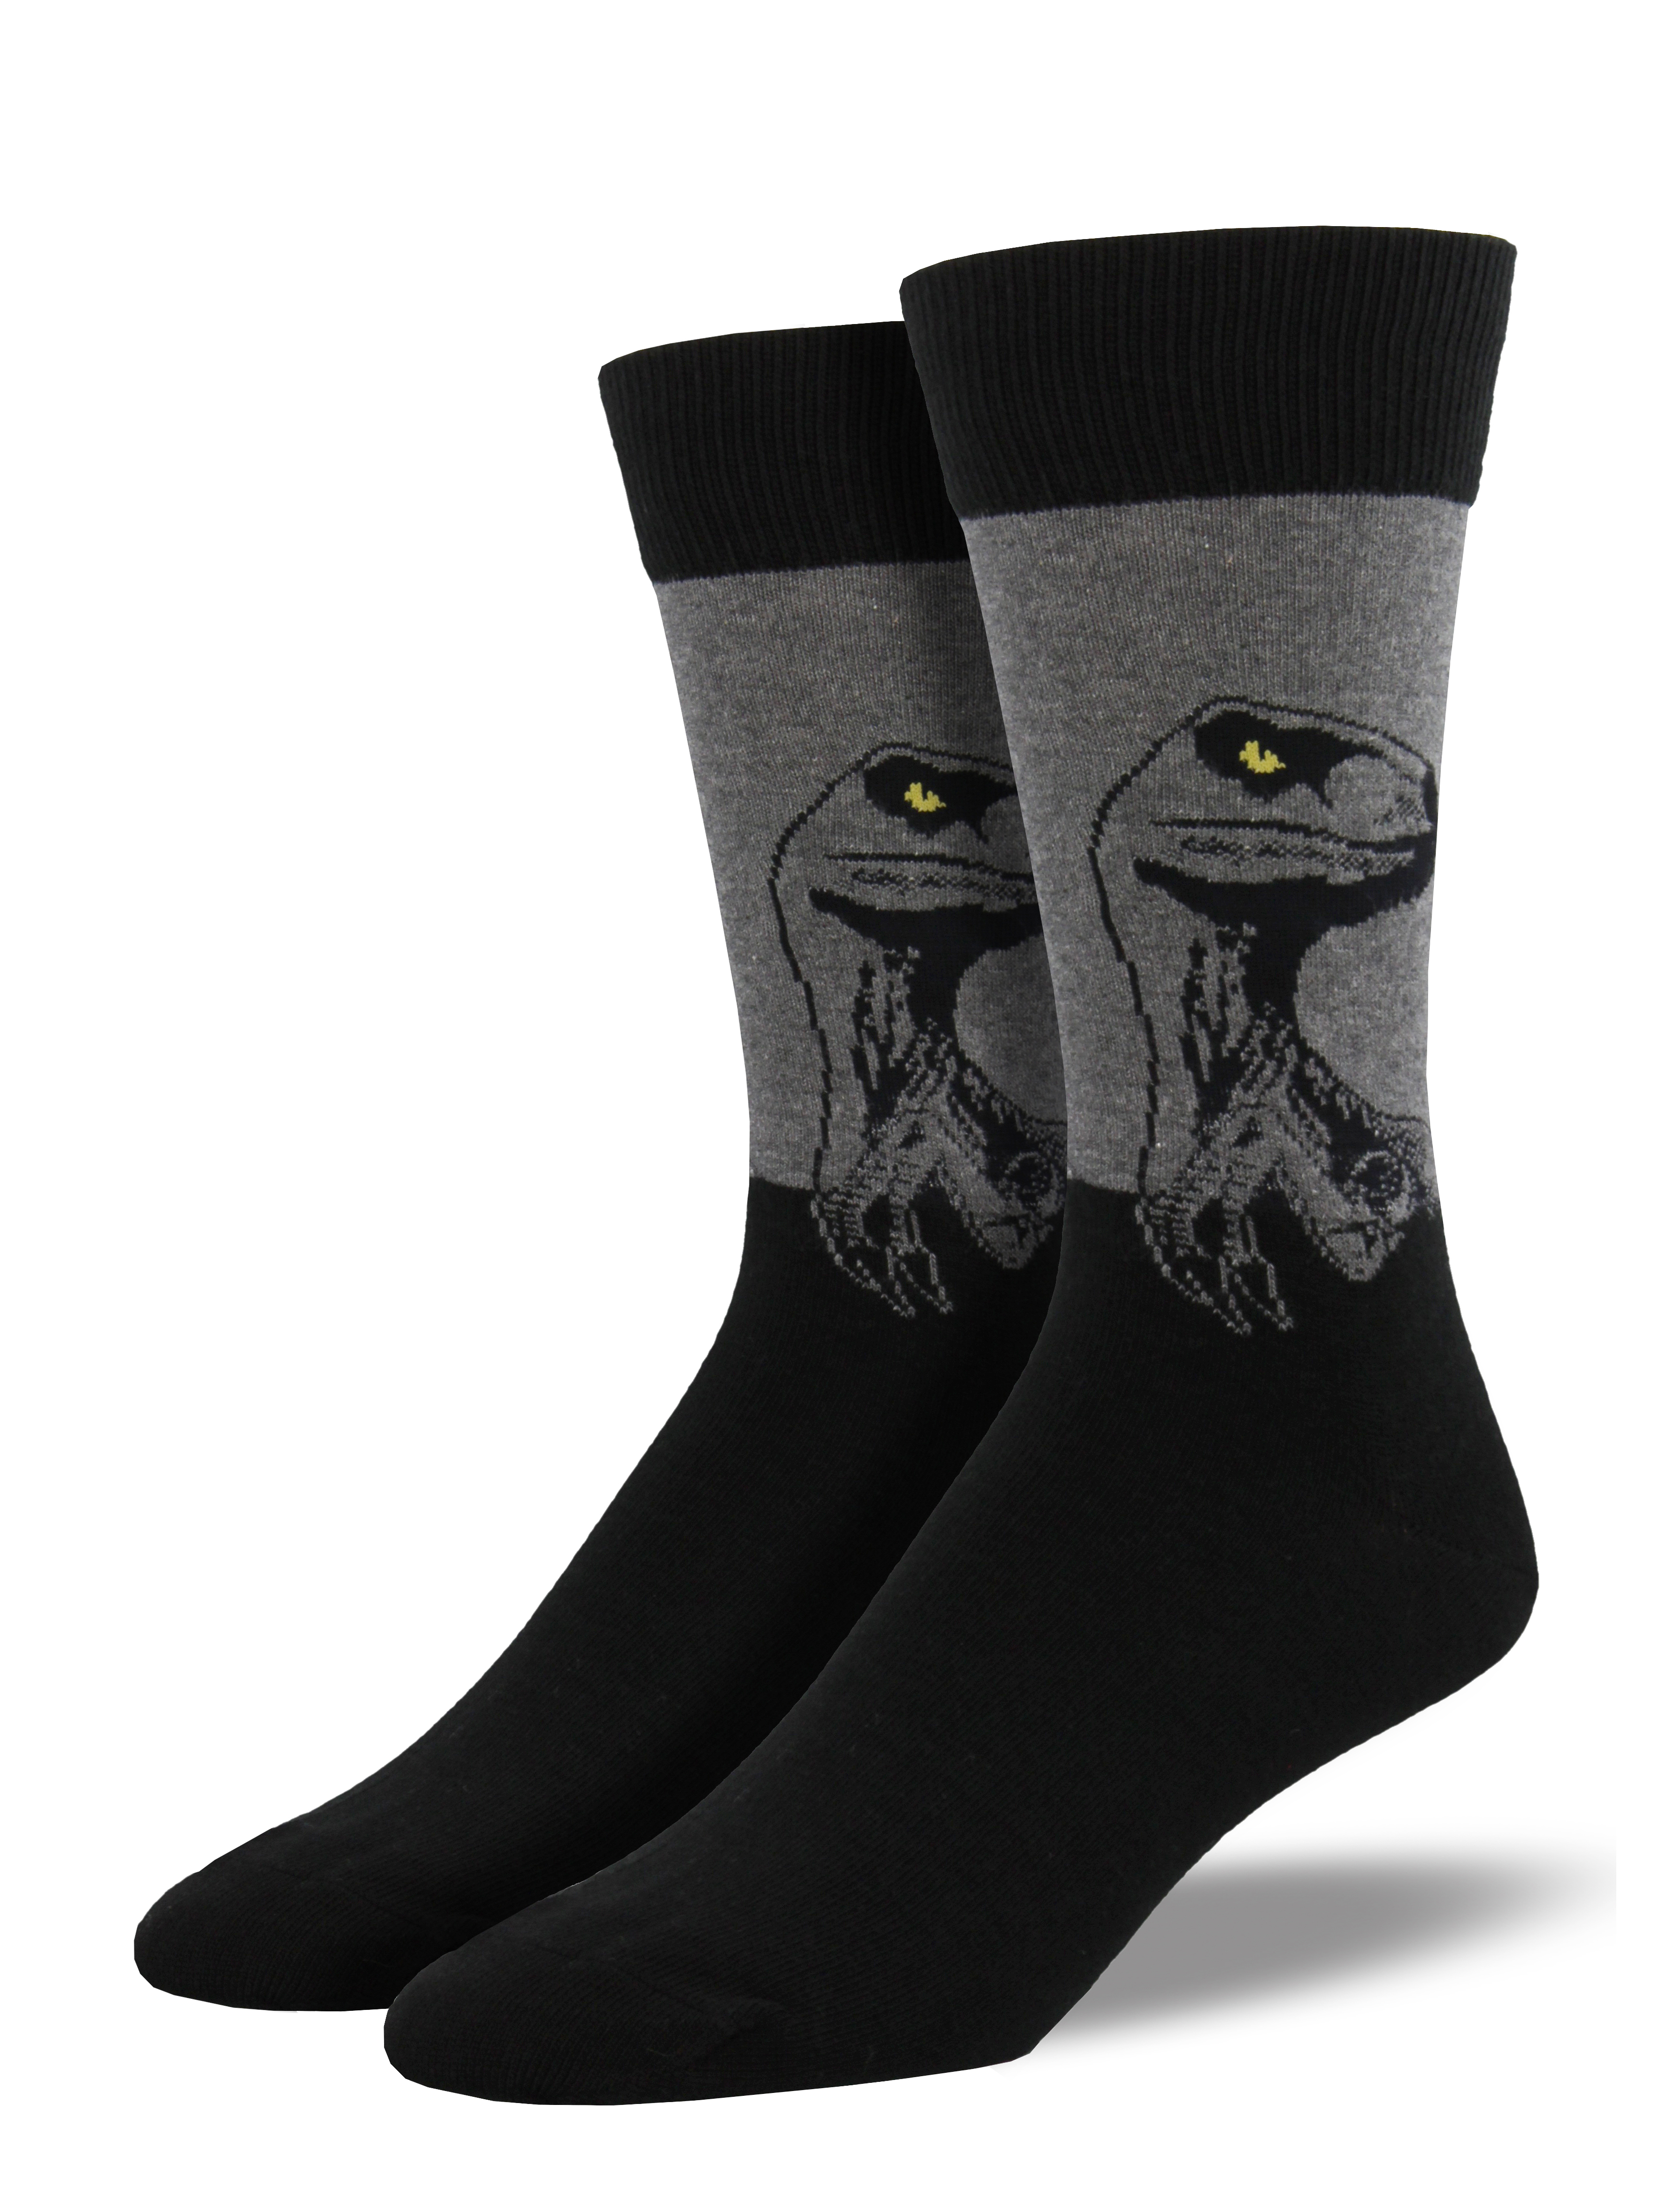 Men's "Raptor" Socks